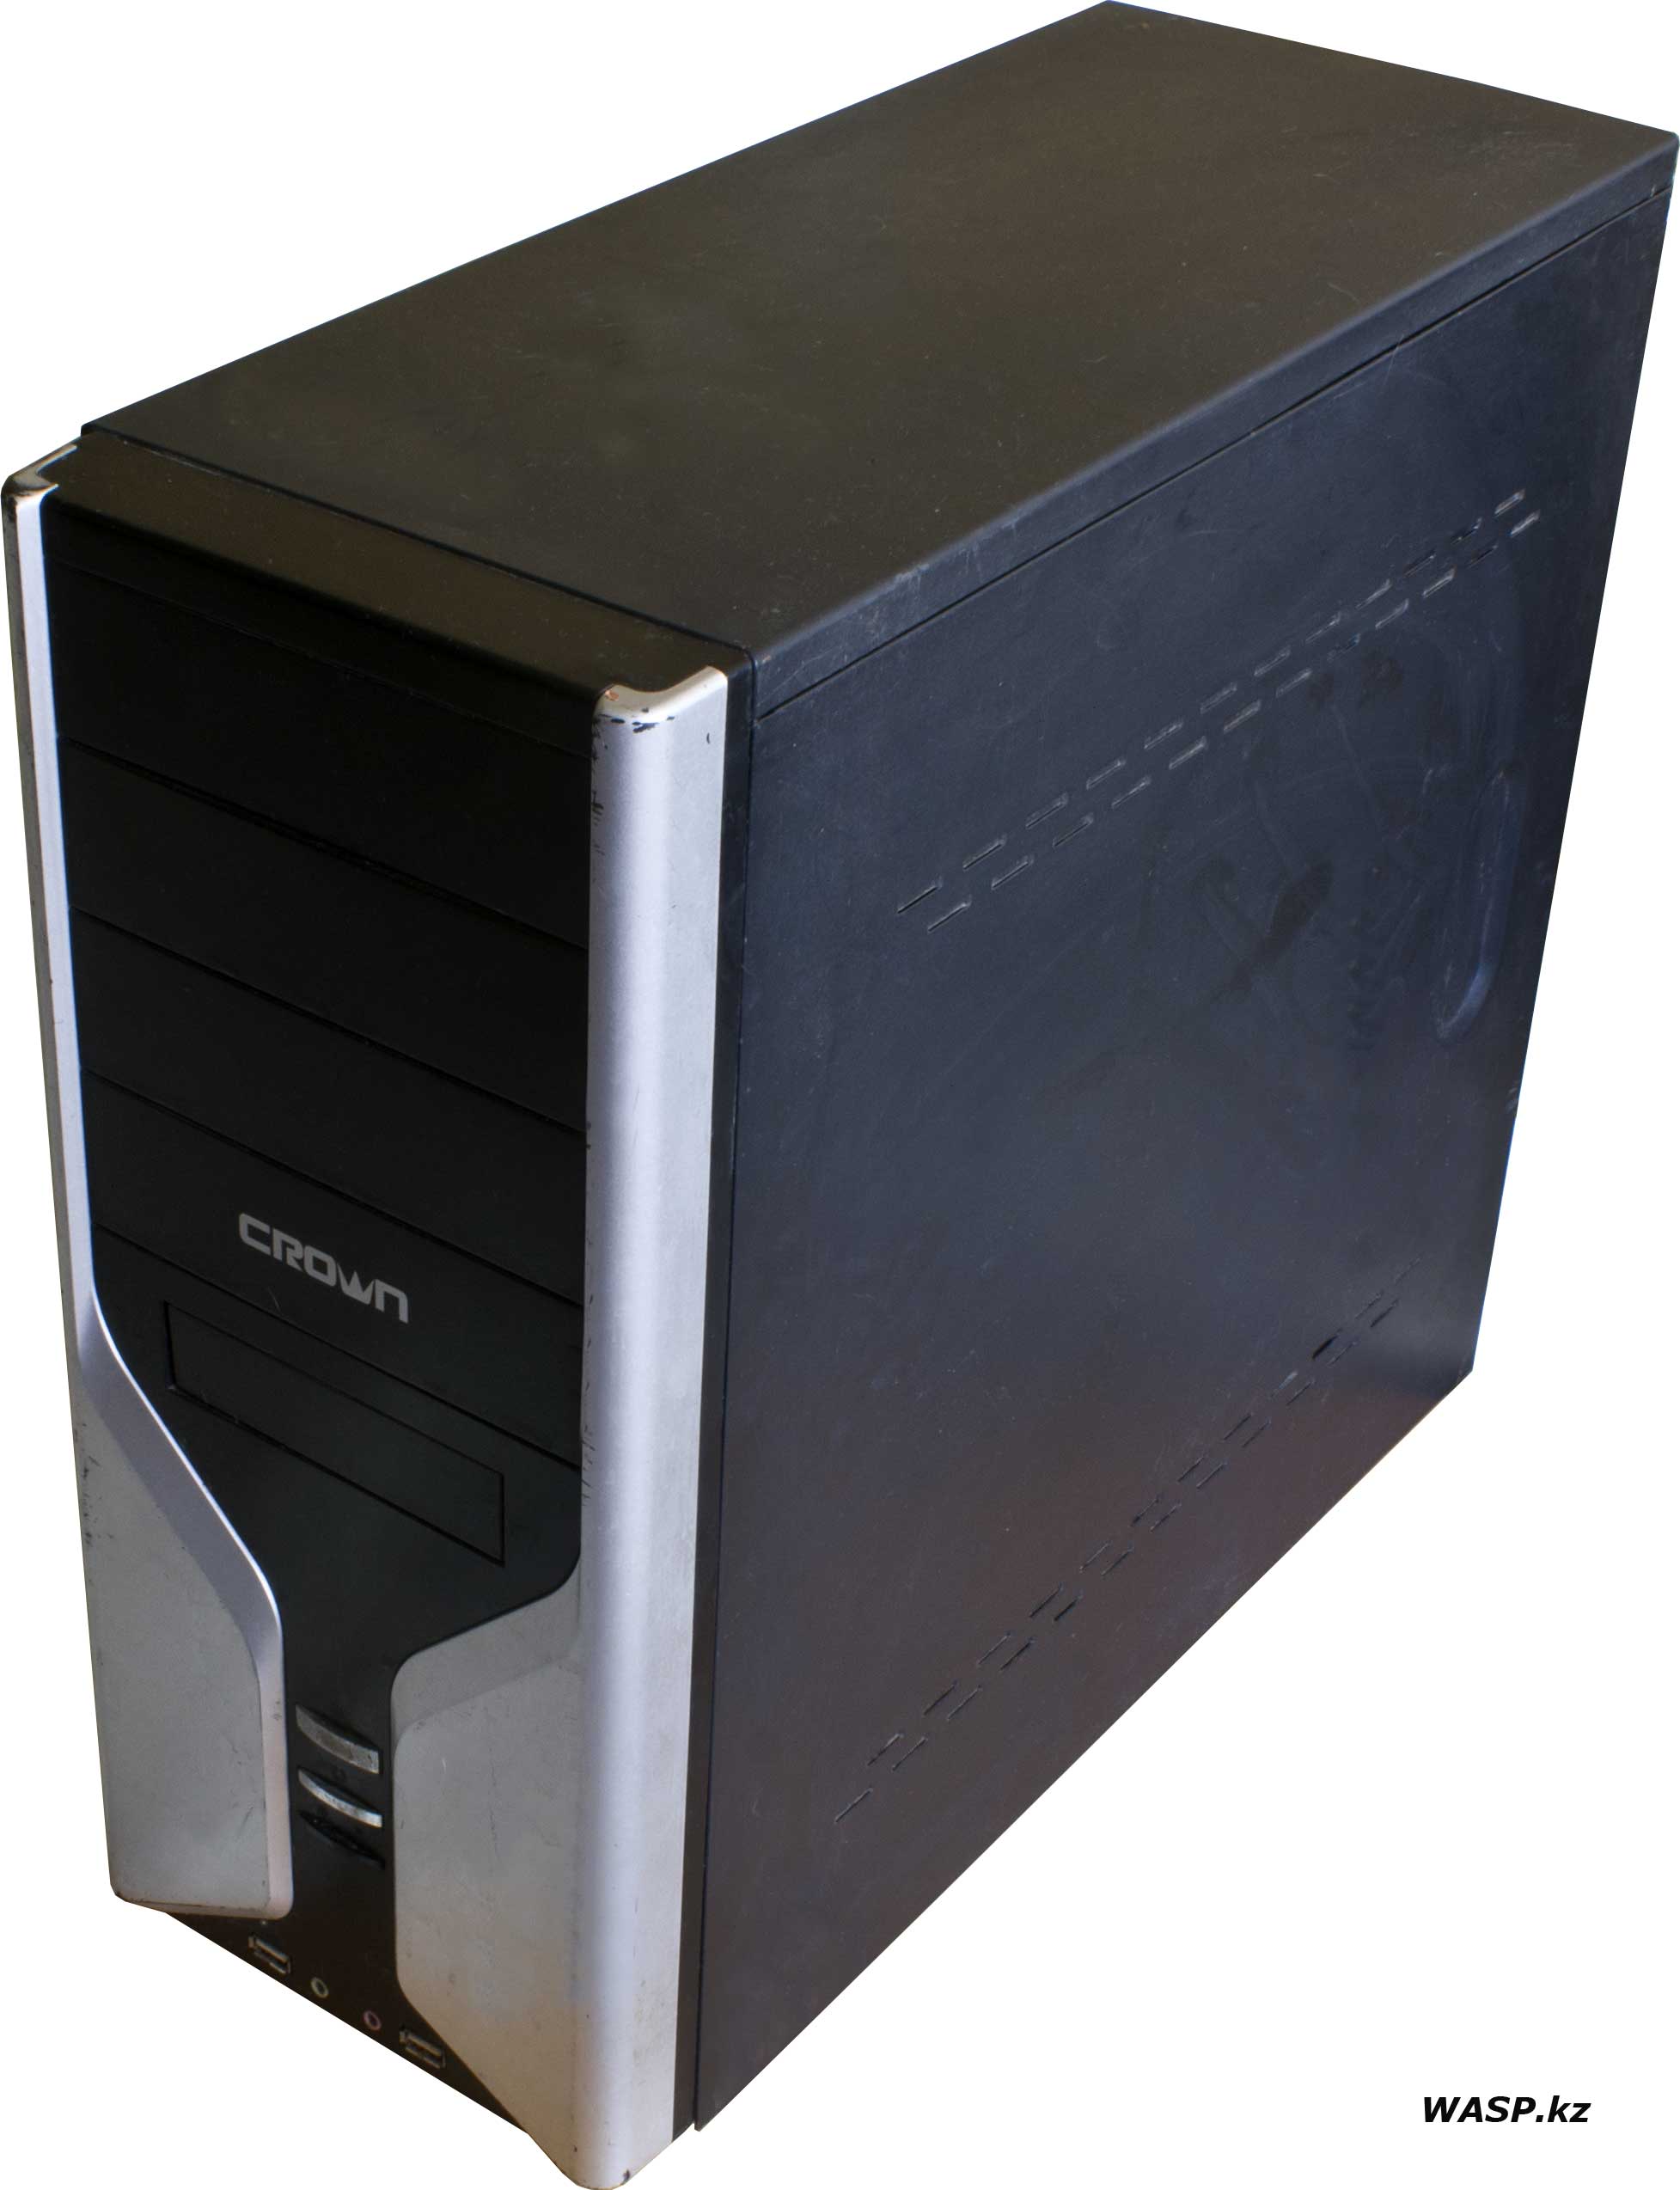 Crown компьютерный корпус серия 600 или 608 примерно 2010 года